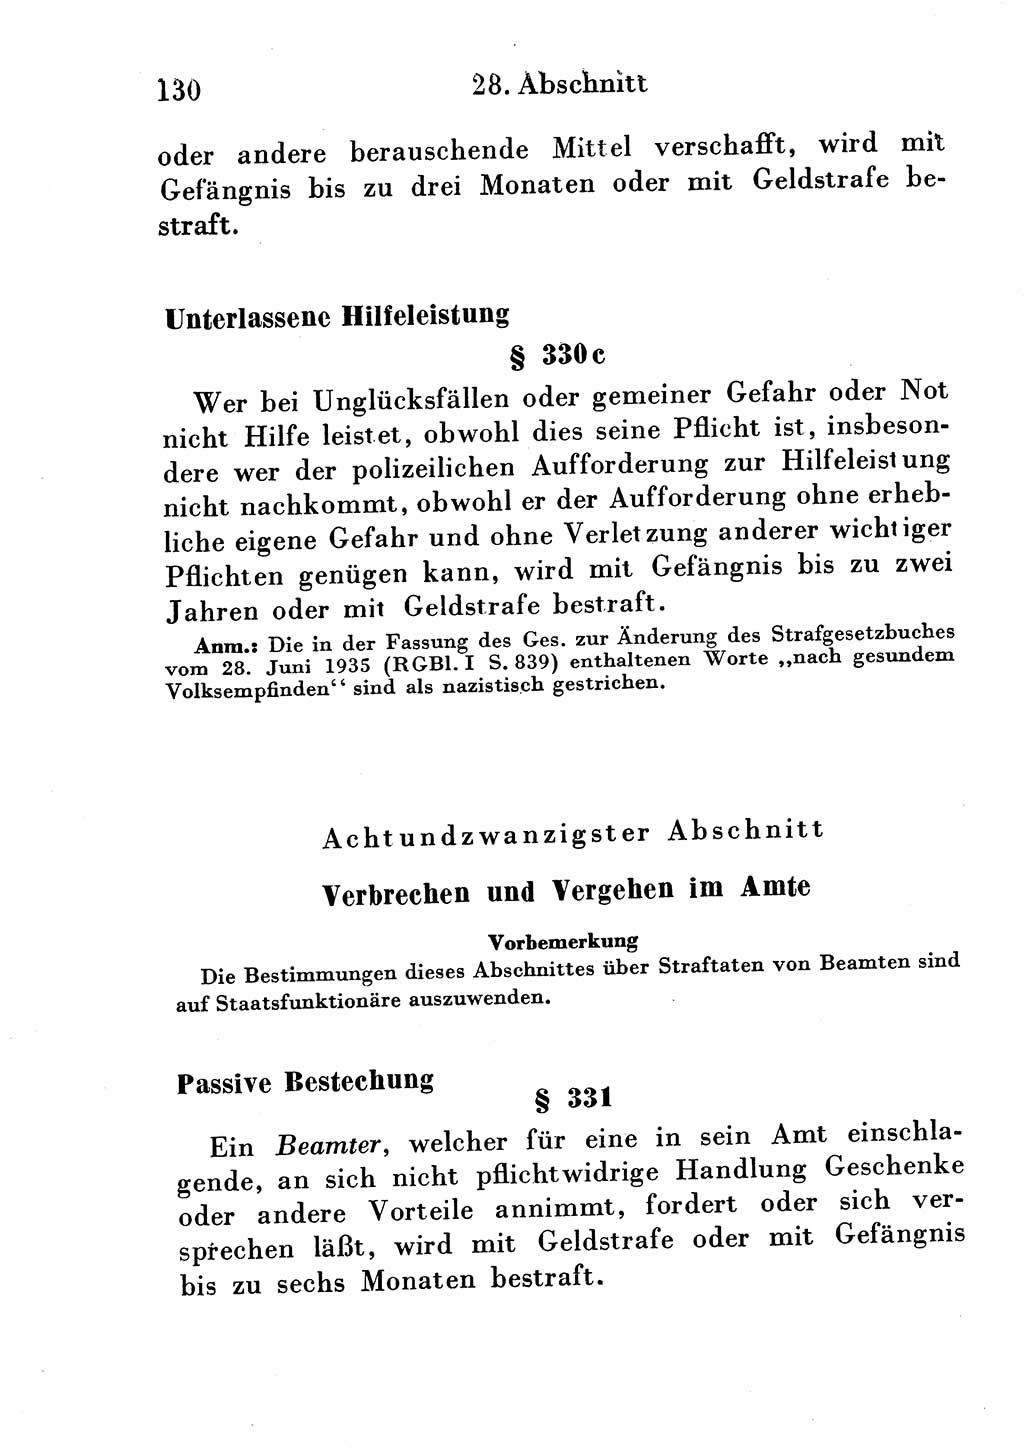 Strafgesetzbuch (StGB) und andere Strafgesetze [Deutsche Demokratische Republik (DDR)] 1954, Seite 130 (StGB Strafges. DDR 1954, S. 130)